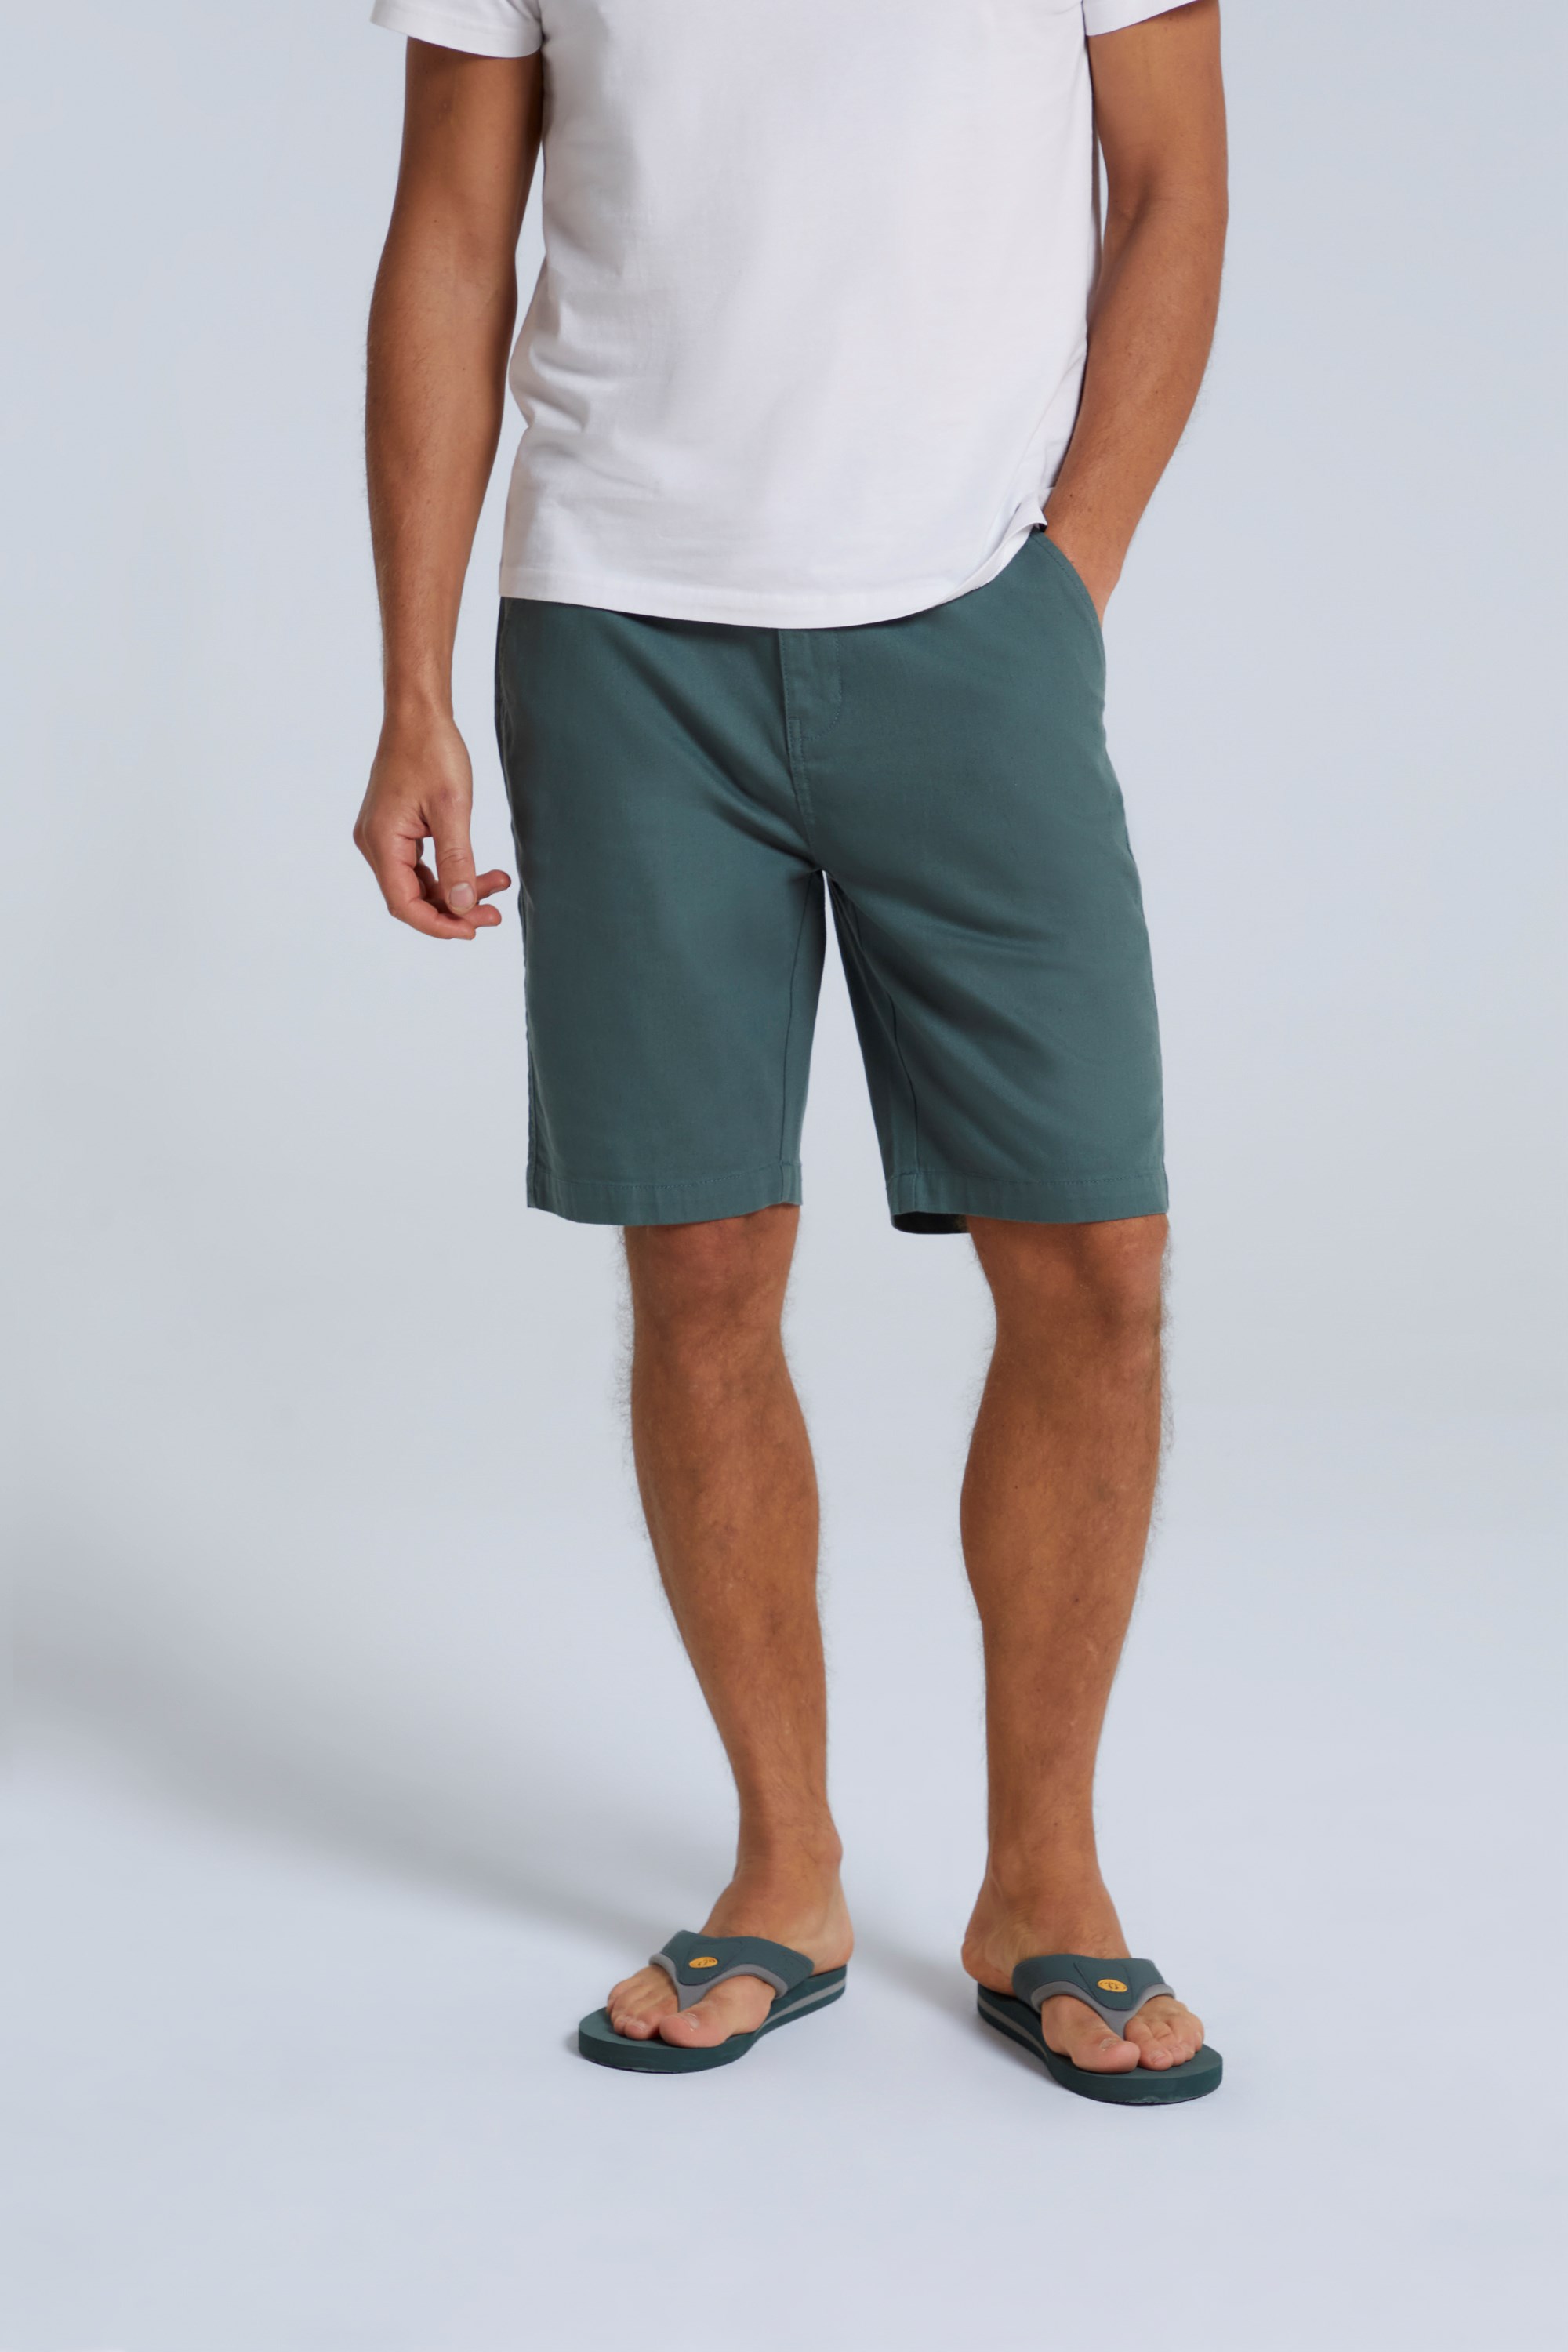 Westbay Mens Organic Chino Shorts - Green